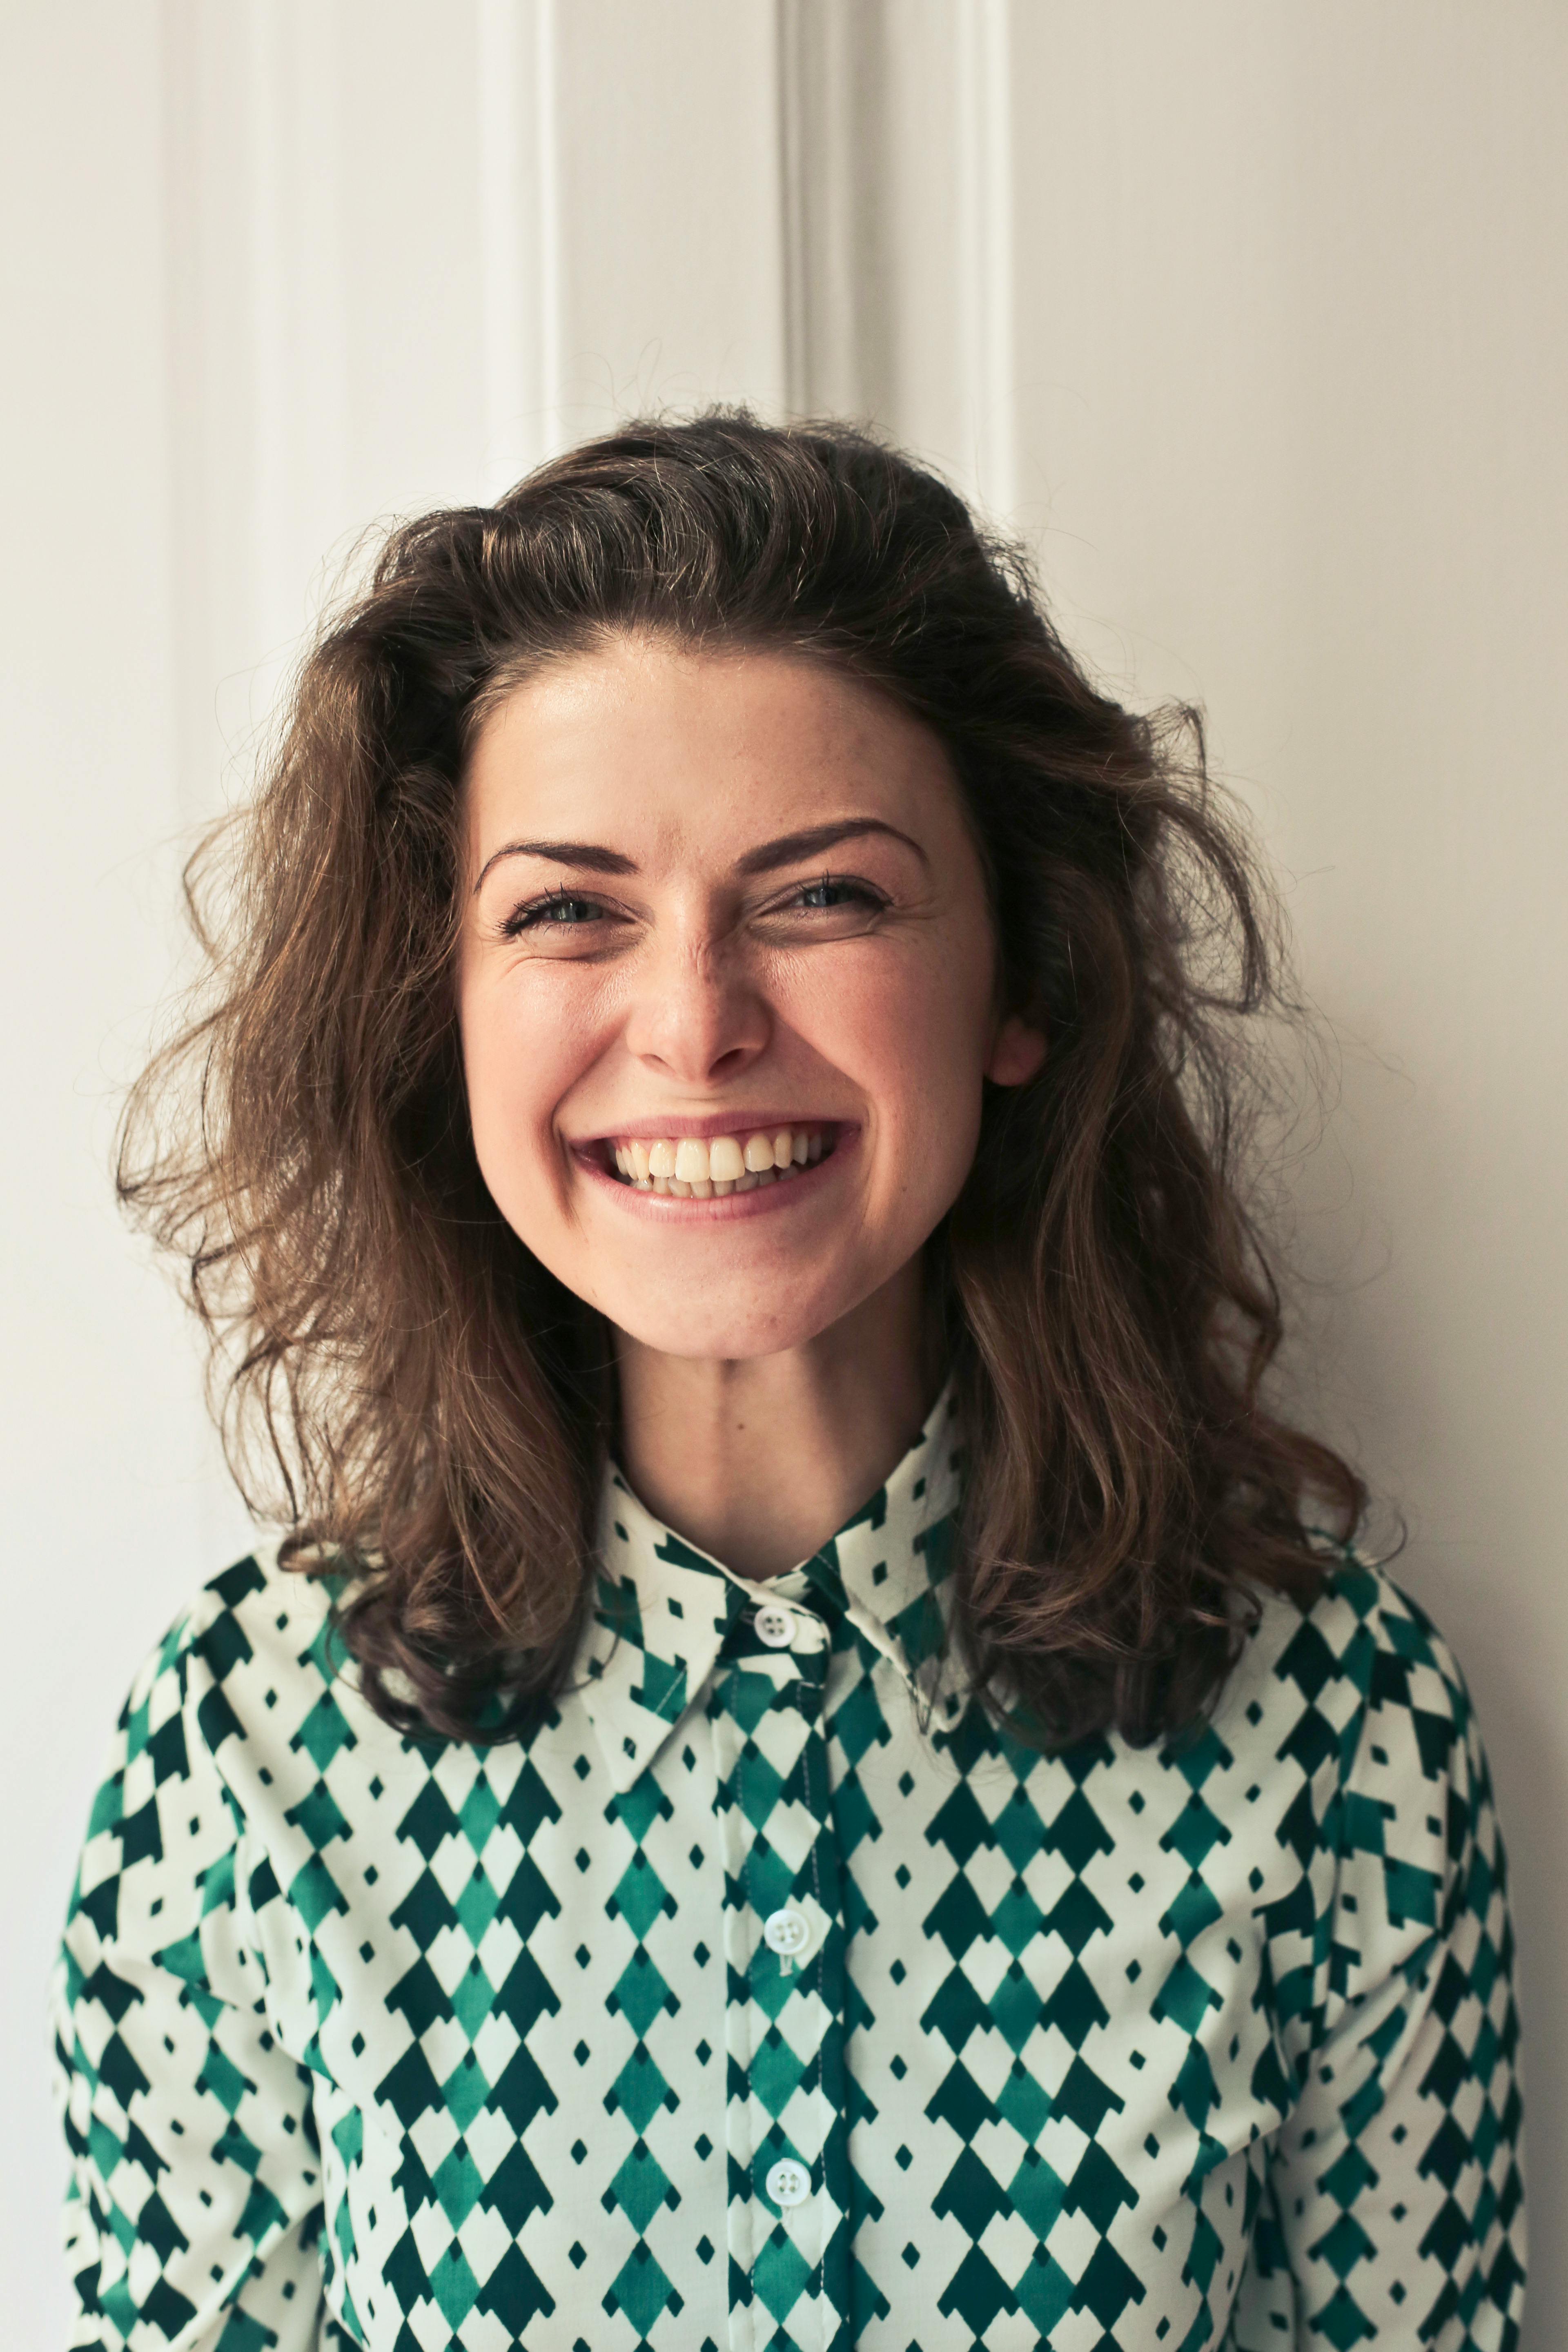 Une femme heureuse qui sourit | Source : Pexels